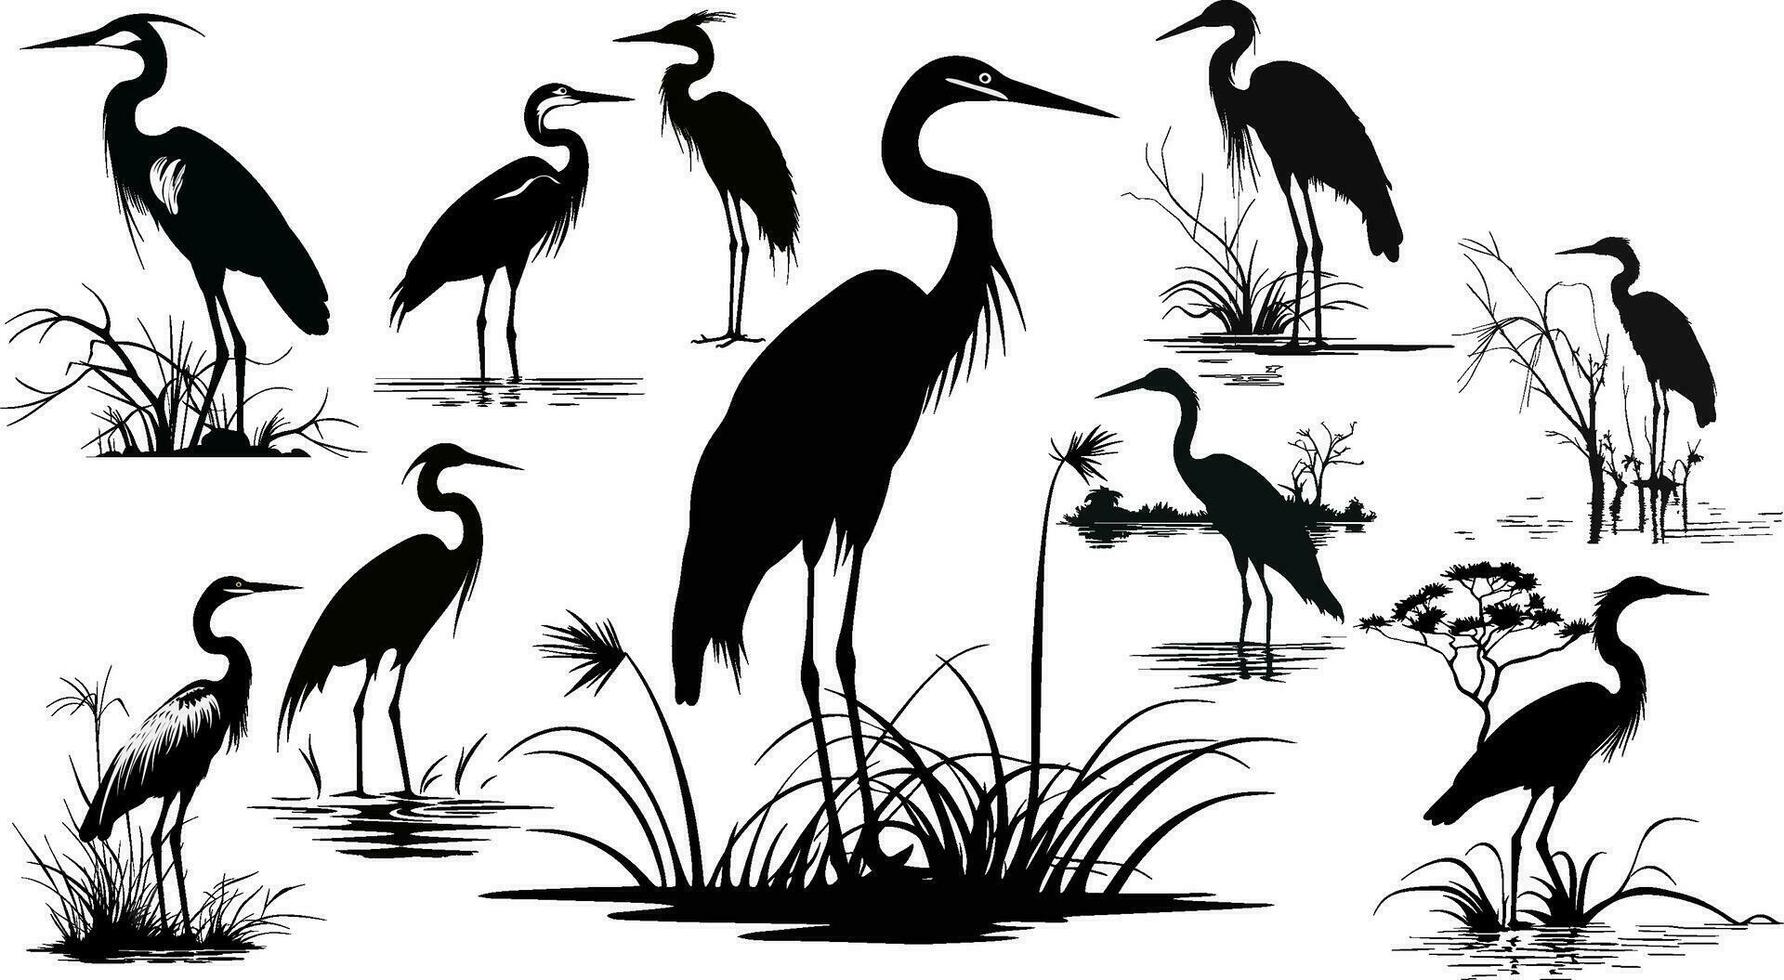 silueta o sombra negro tinta íconos de grua aves o garzas en pie colocar. grupo de cigüeñas contorno modelo o creativo antecedentes vector ilustración aislado en blanco.